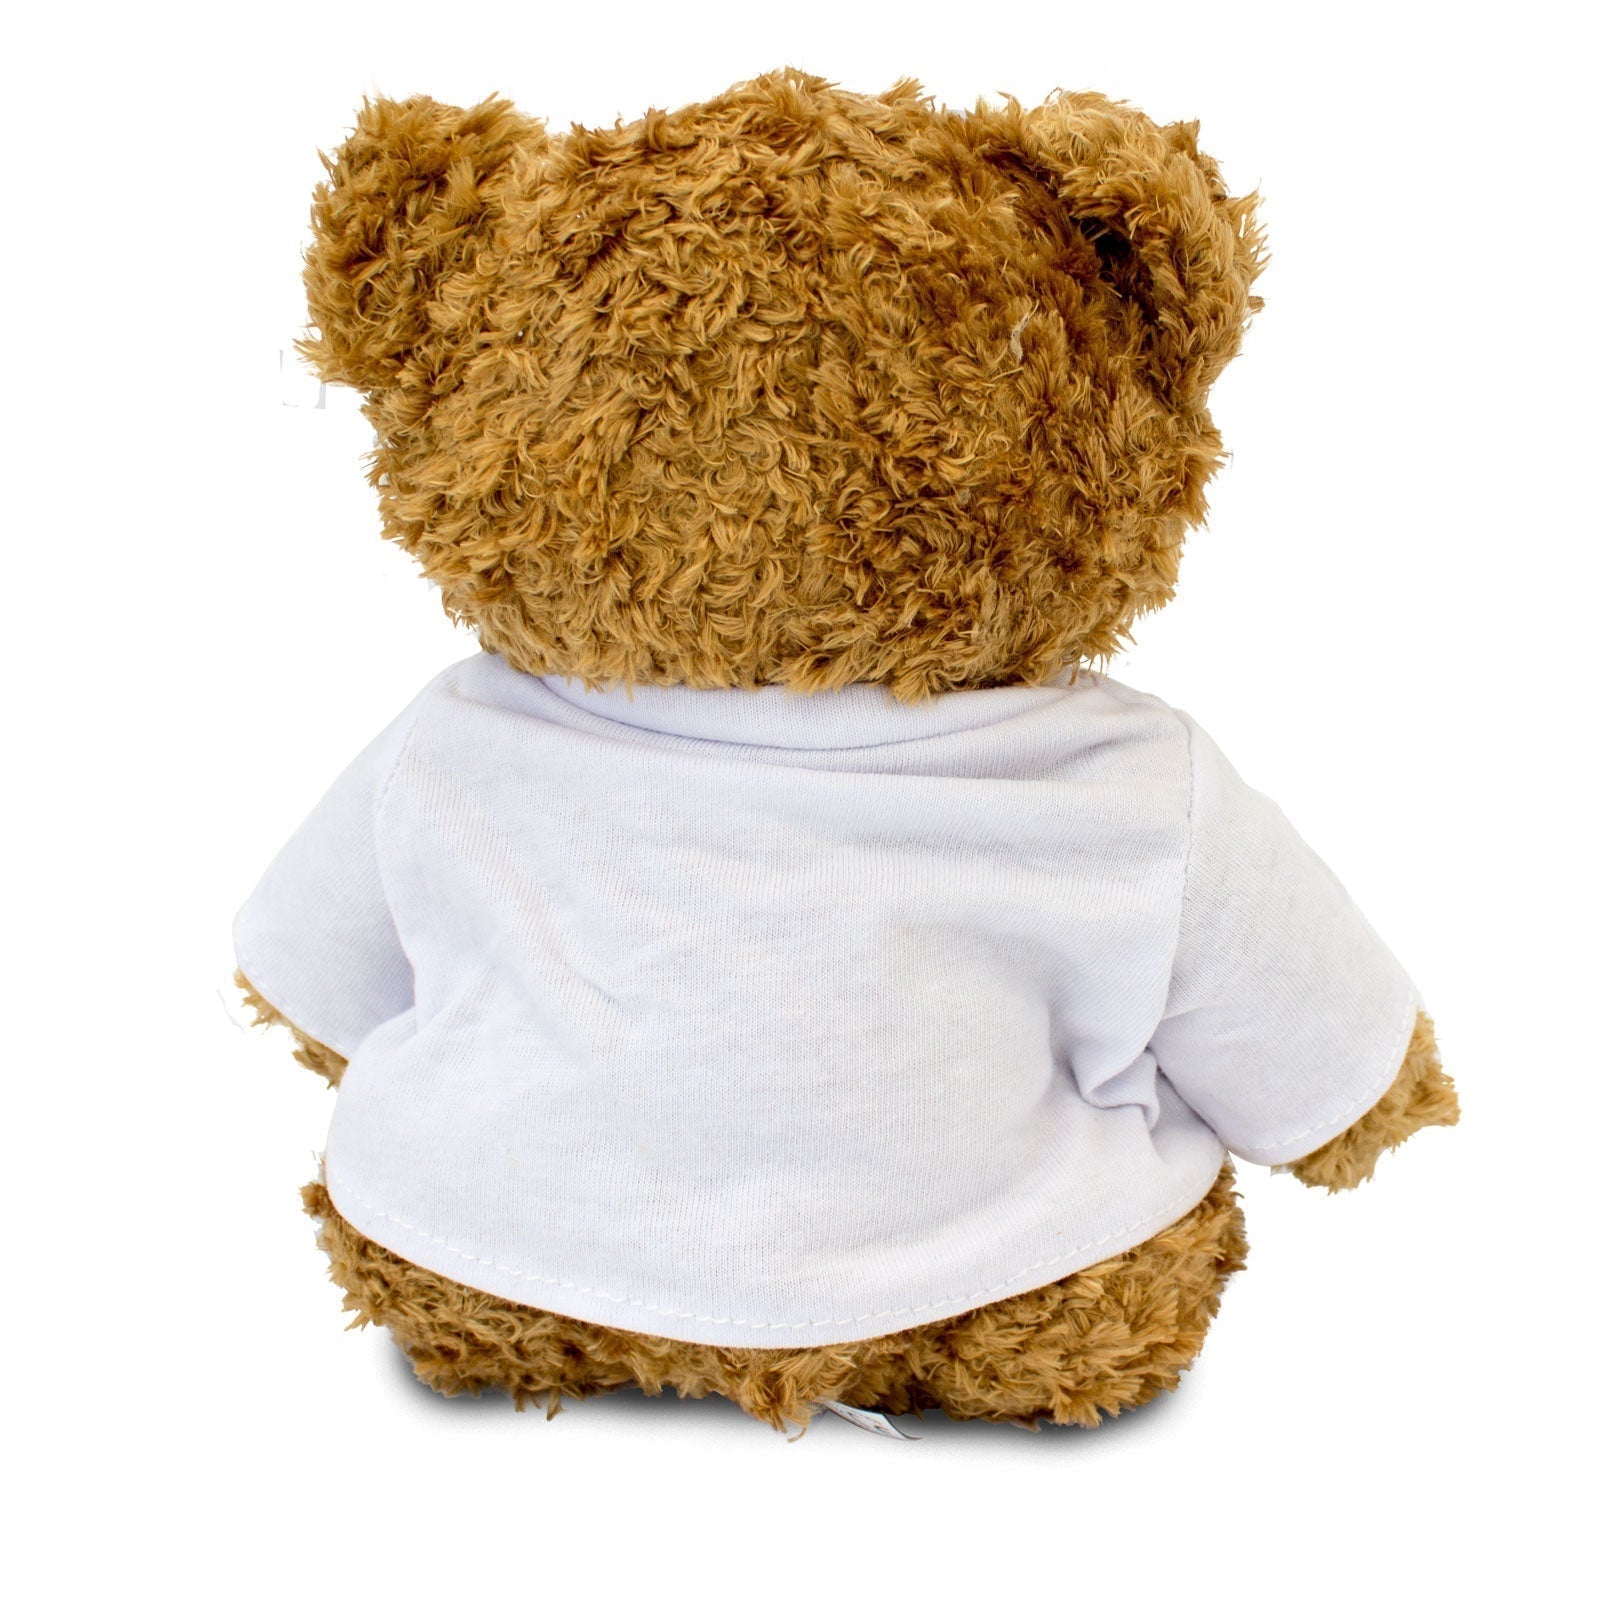 I Love Wallabies - Teddy Bear